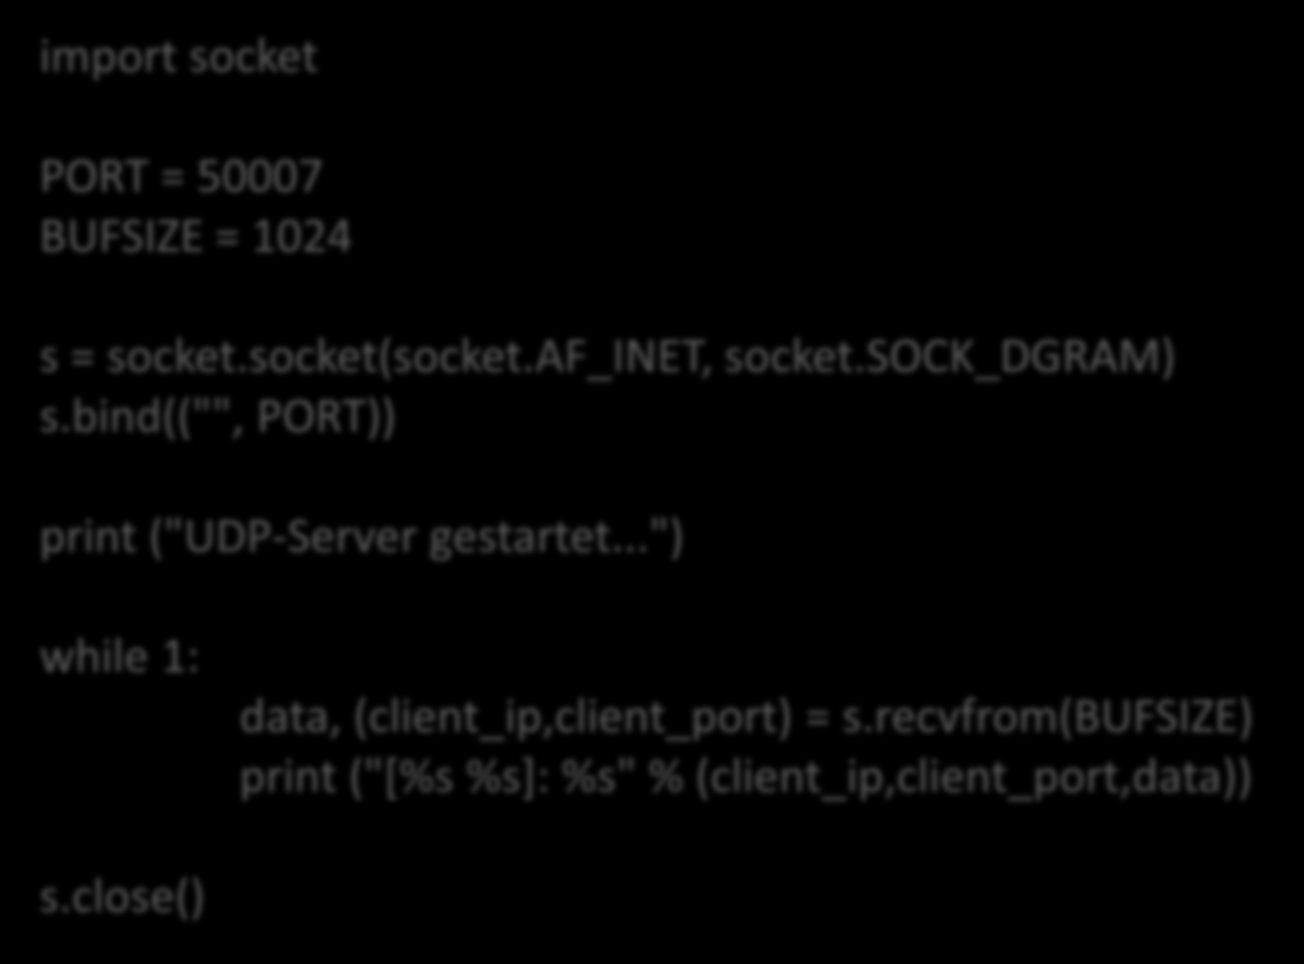 Netzwerk UDP Server import socket PORT = 50007 BUFSIZE = 1024 s = socket.socket(socket.af_inet, socket.sock_dgram) s.